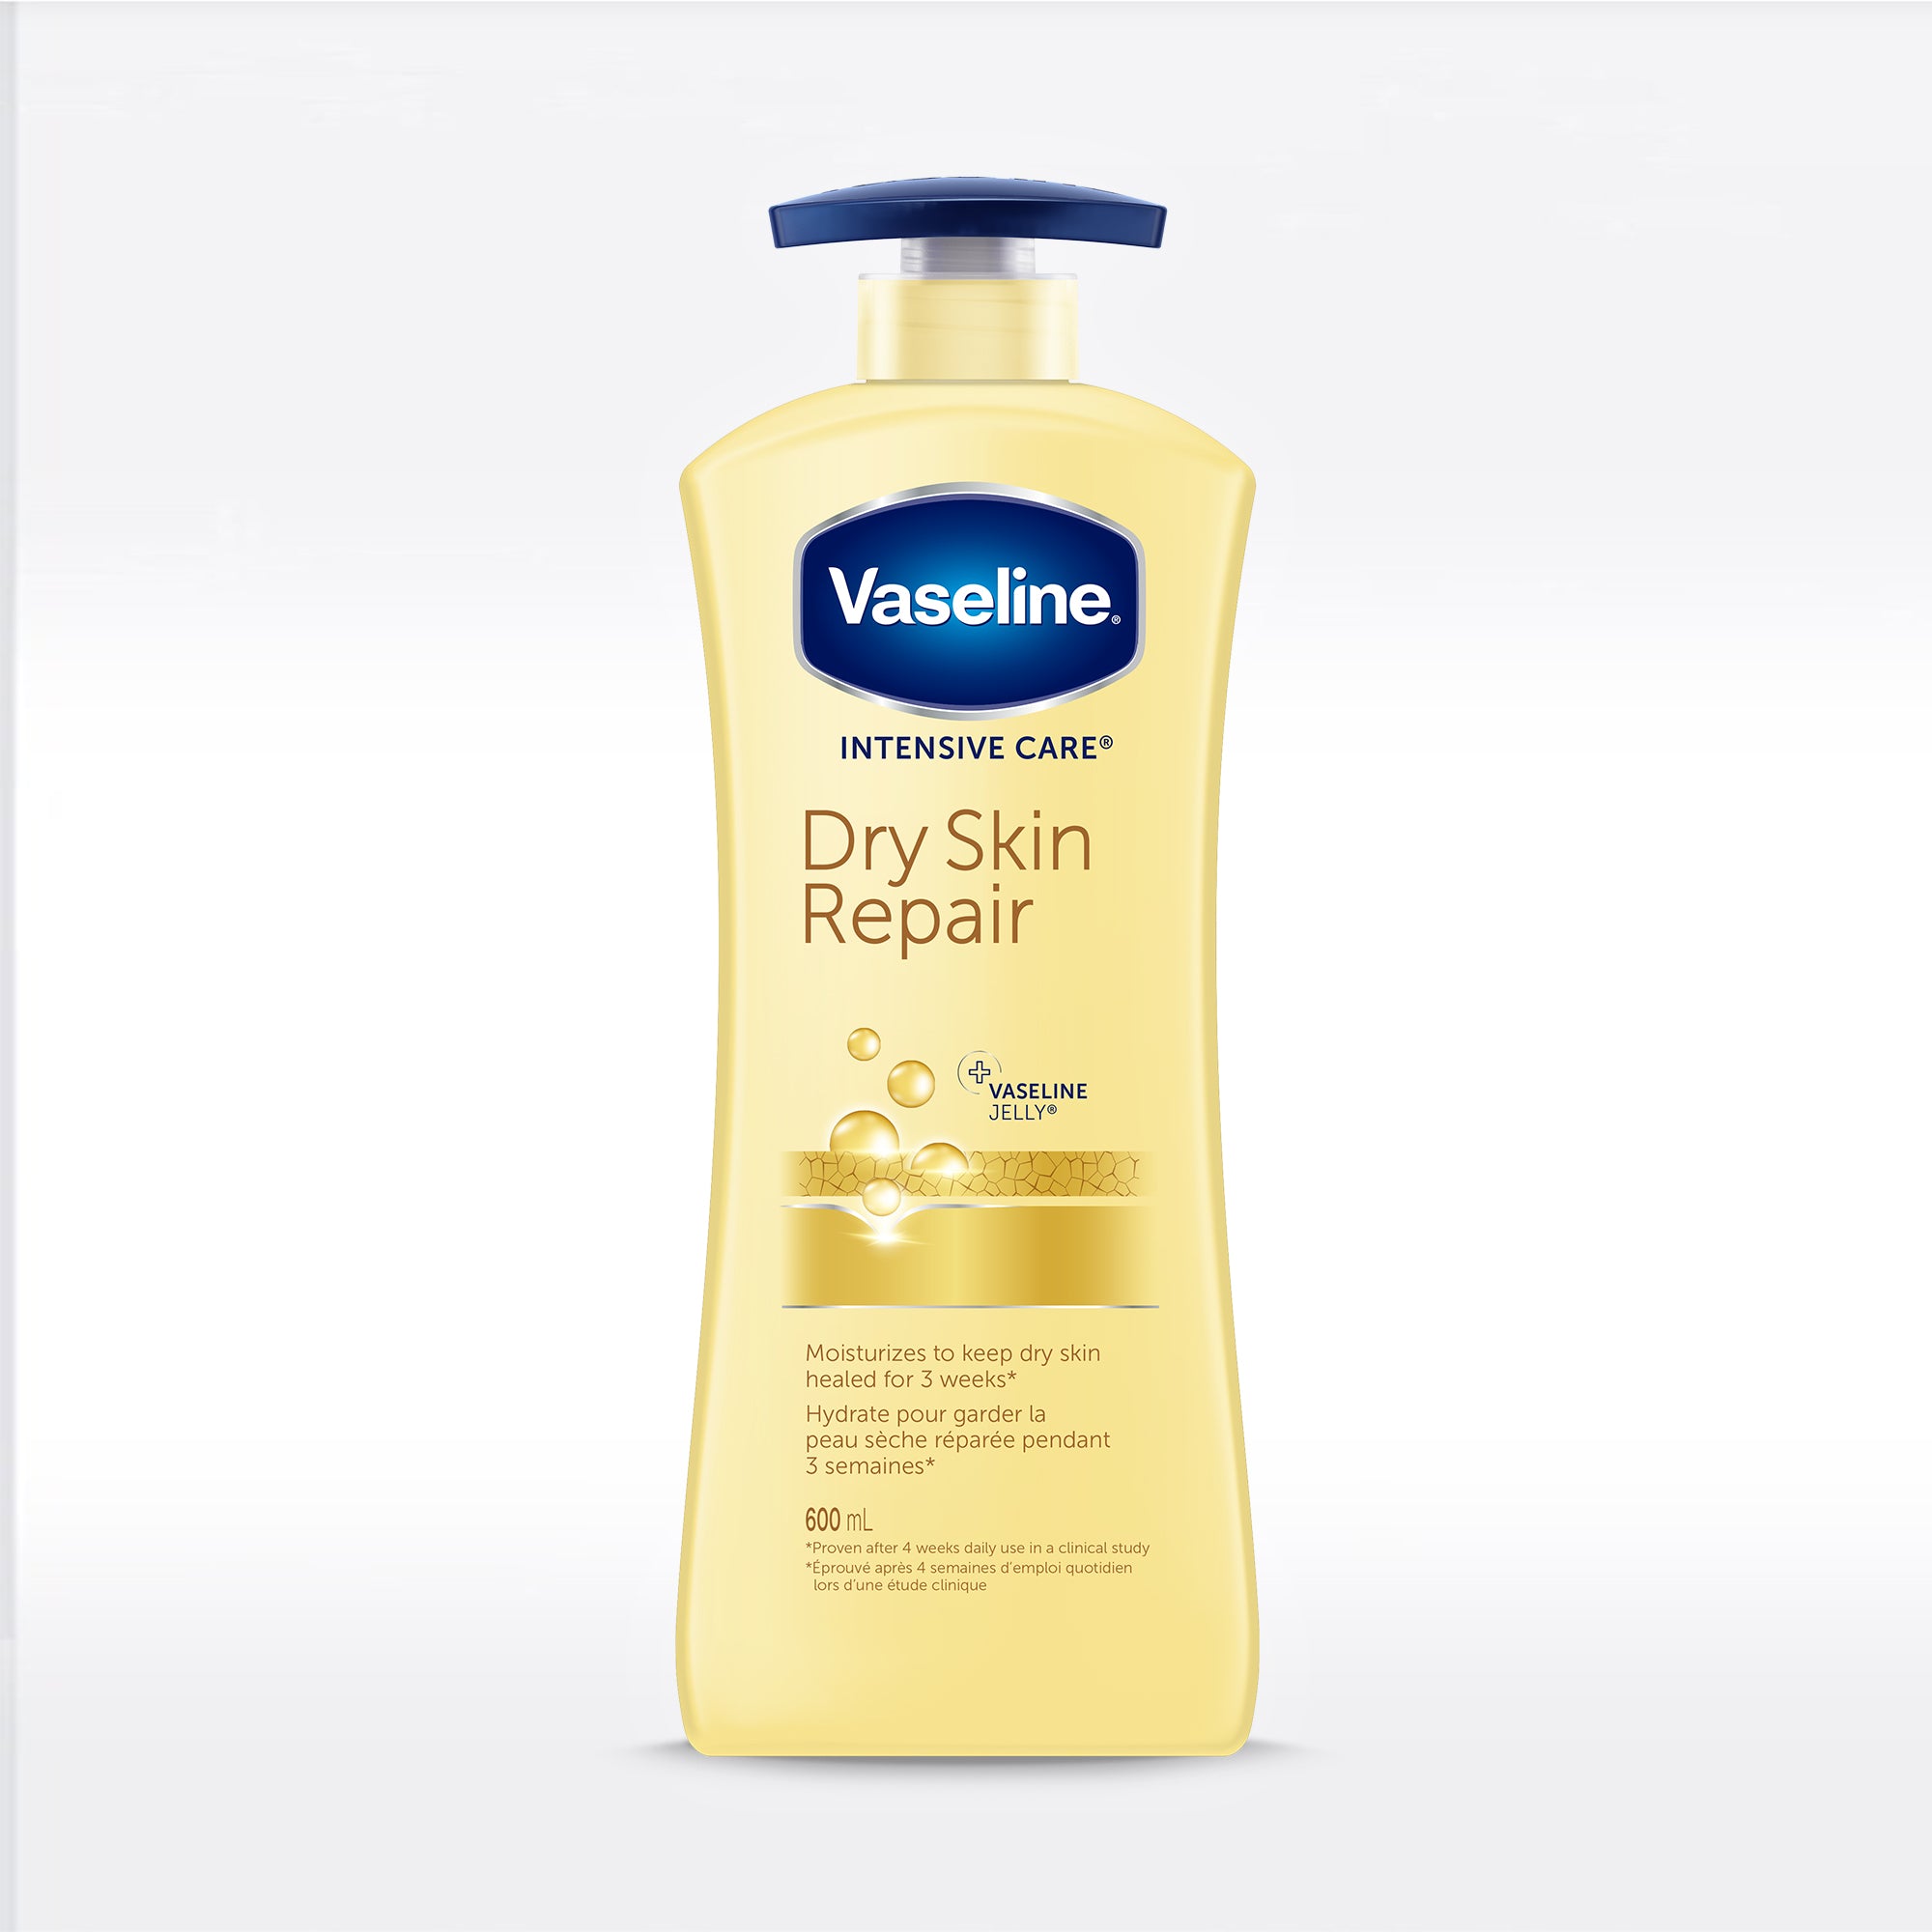 Vaseline Dry Skin Repair Lotion 600mL